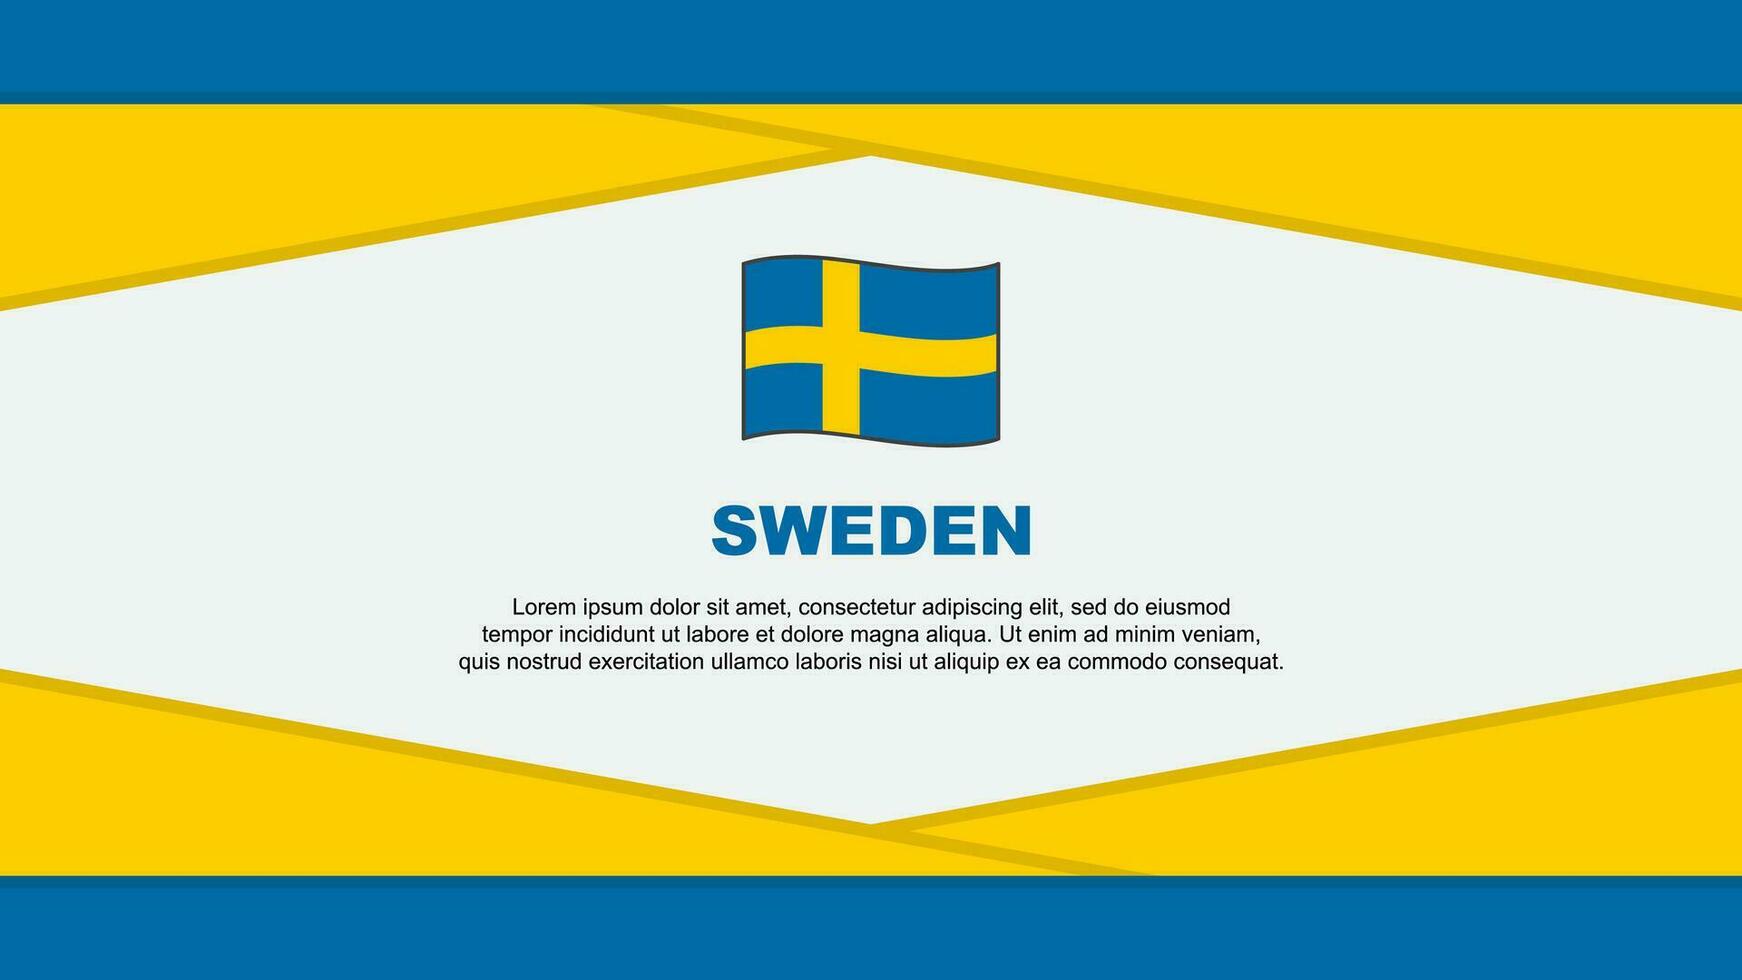 Sweden Flag Abstract Background Design Template. Sweden Independence Day Banner Cartoon Vector Illustration. Sweden Vector